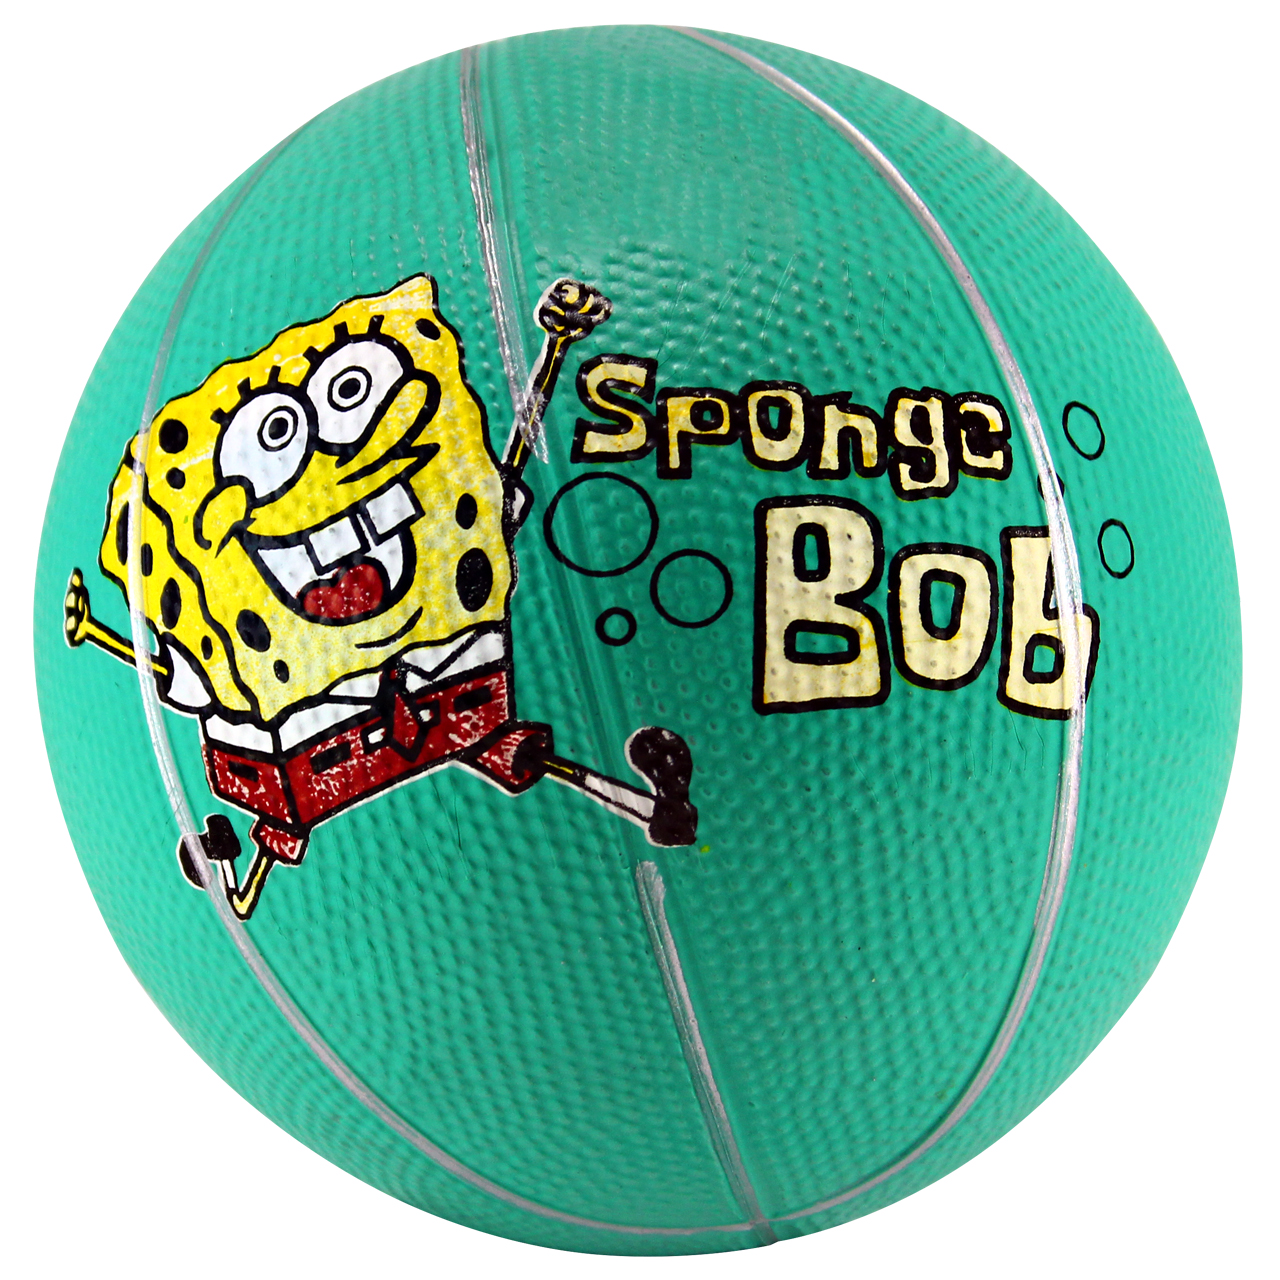 مینی توپ بسکتبال مدل Sponge Bob کد 14070017 سایز 1